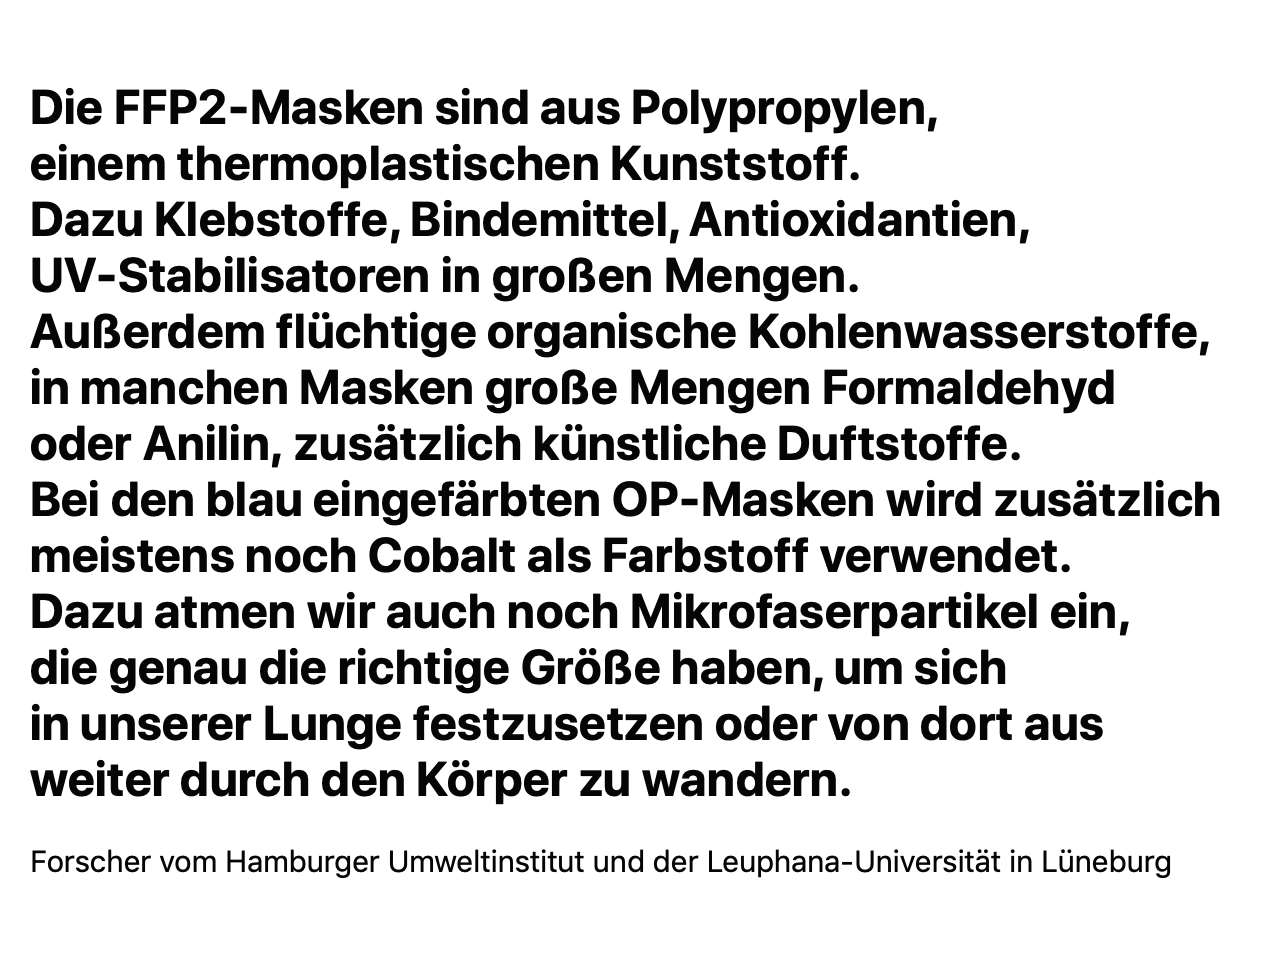 Hamburger_Umweltinstitut_und_Leuphana_Universtitaet_Lueneburg.png